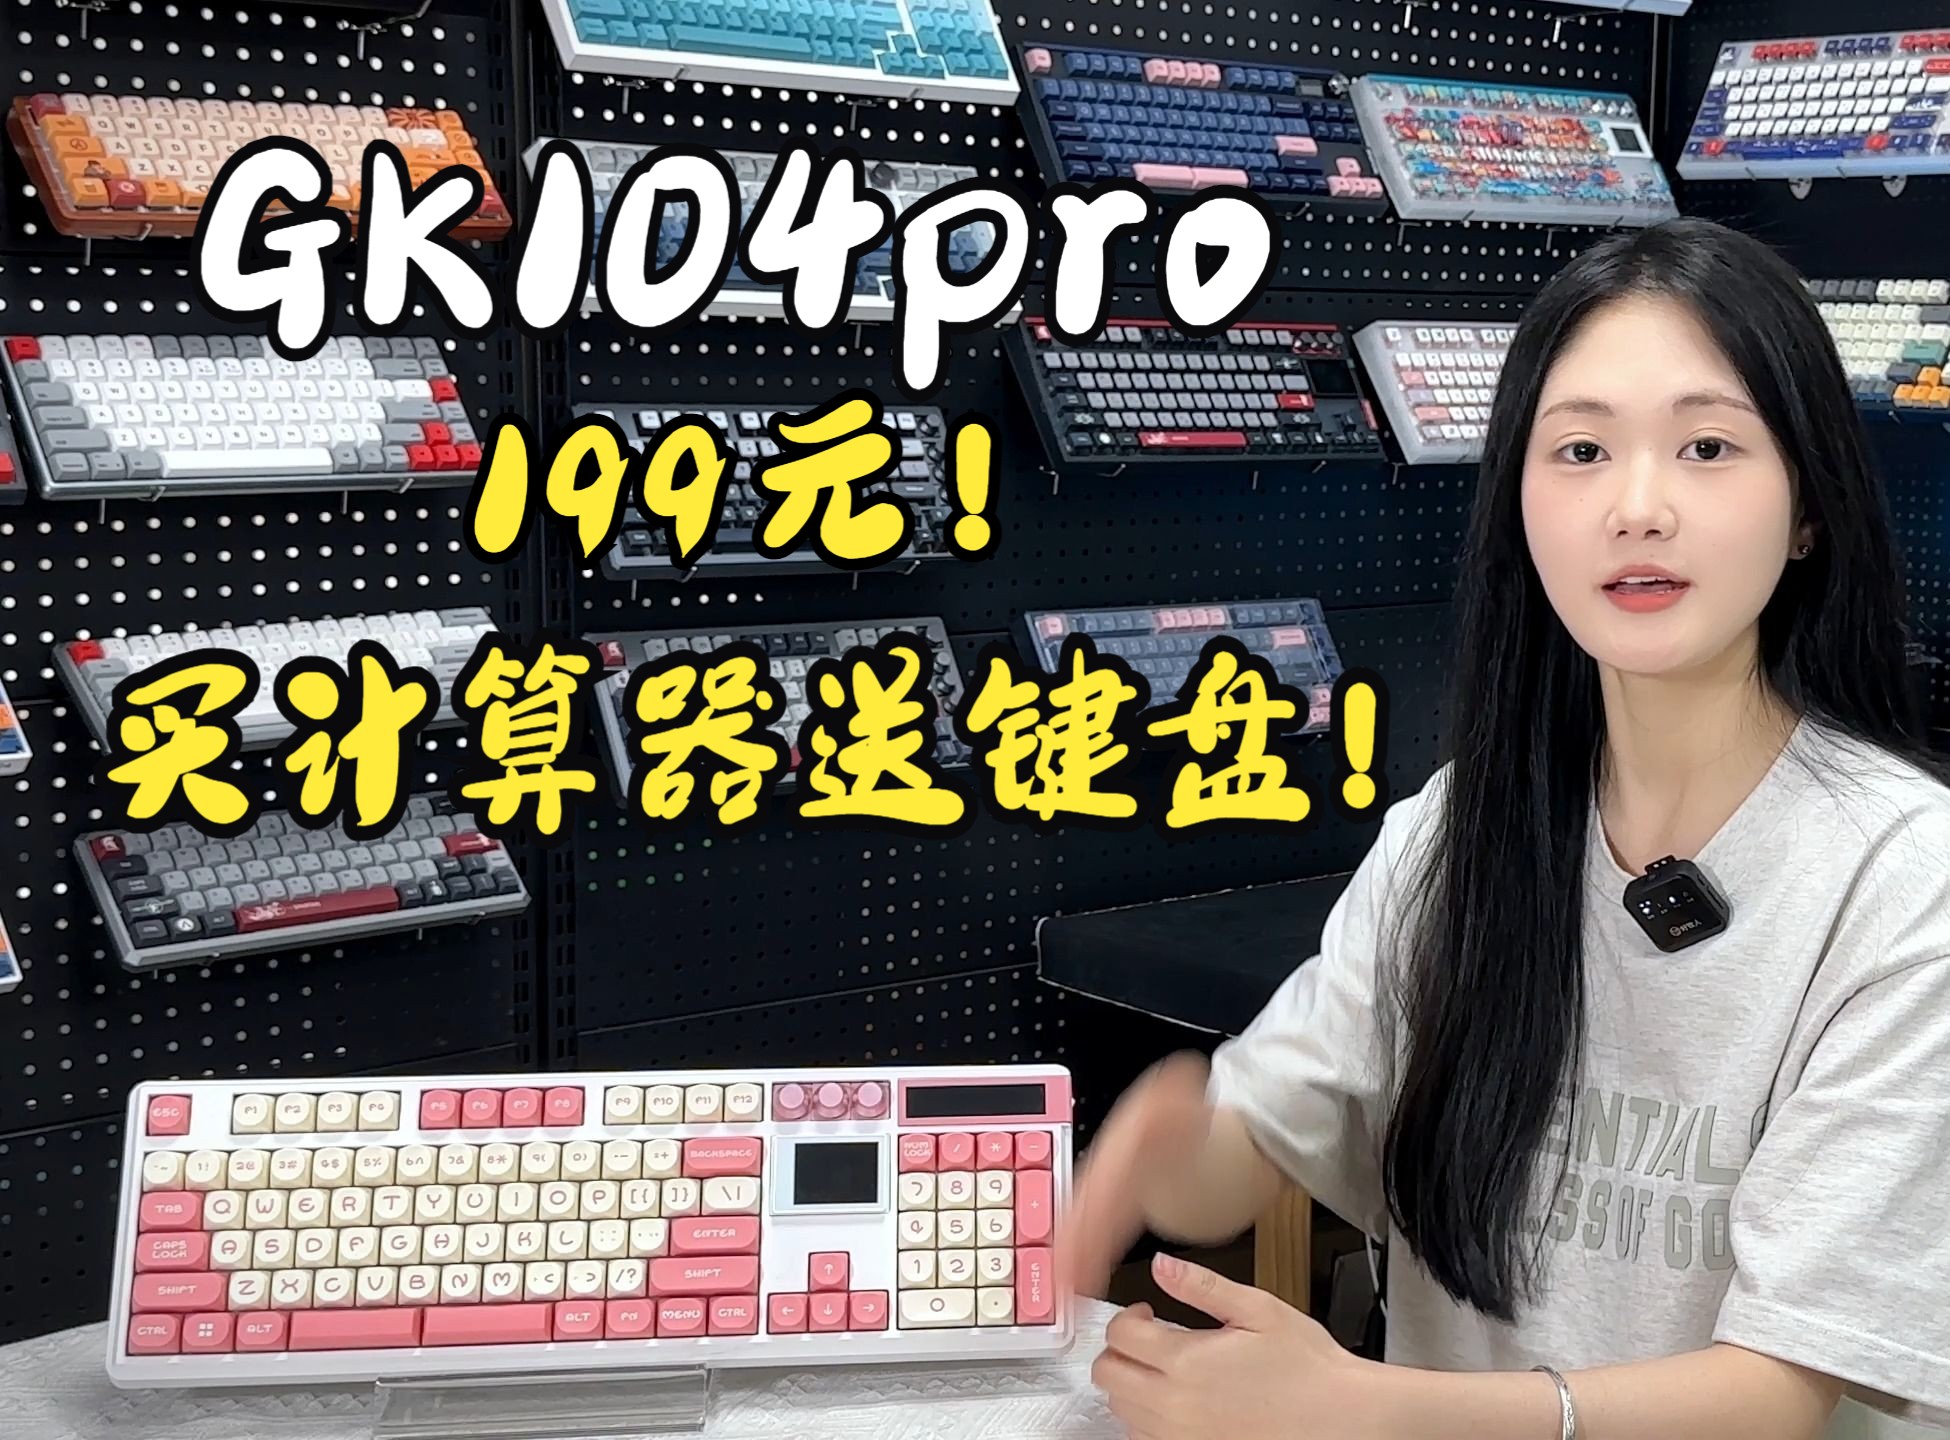 【小呆虫】GK 104Pro 买计算器送键盘 超值的好嘛~